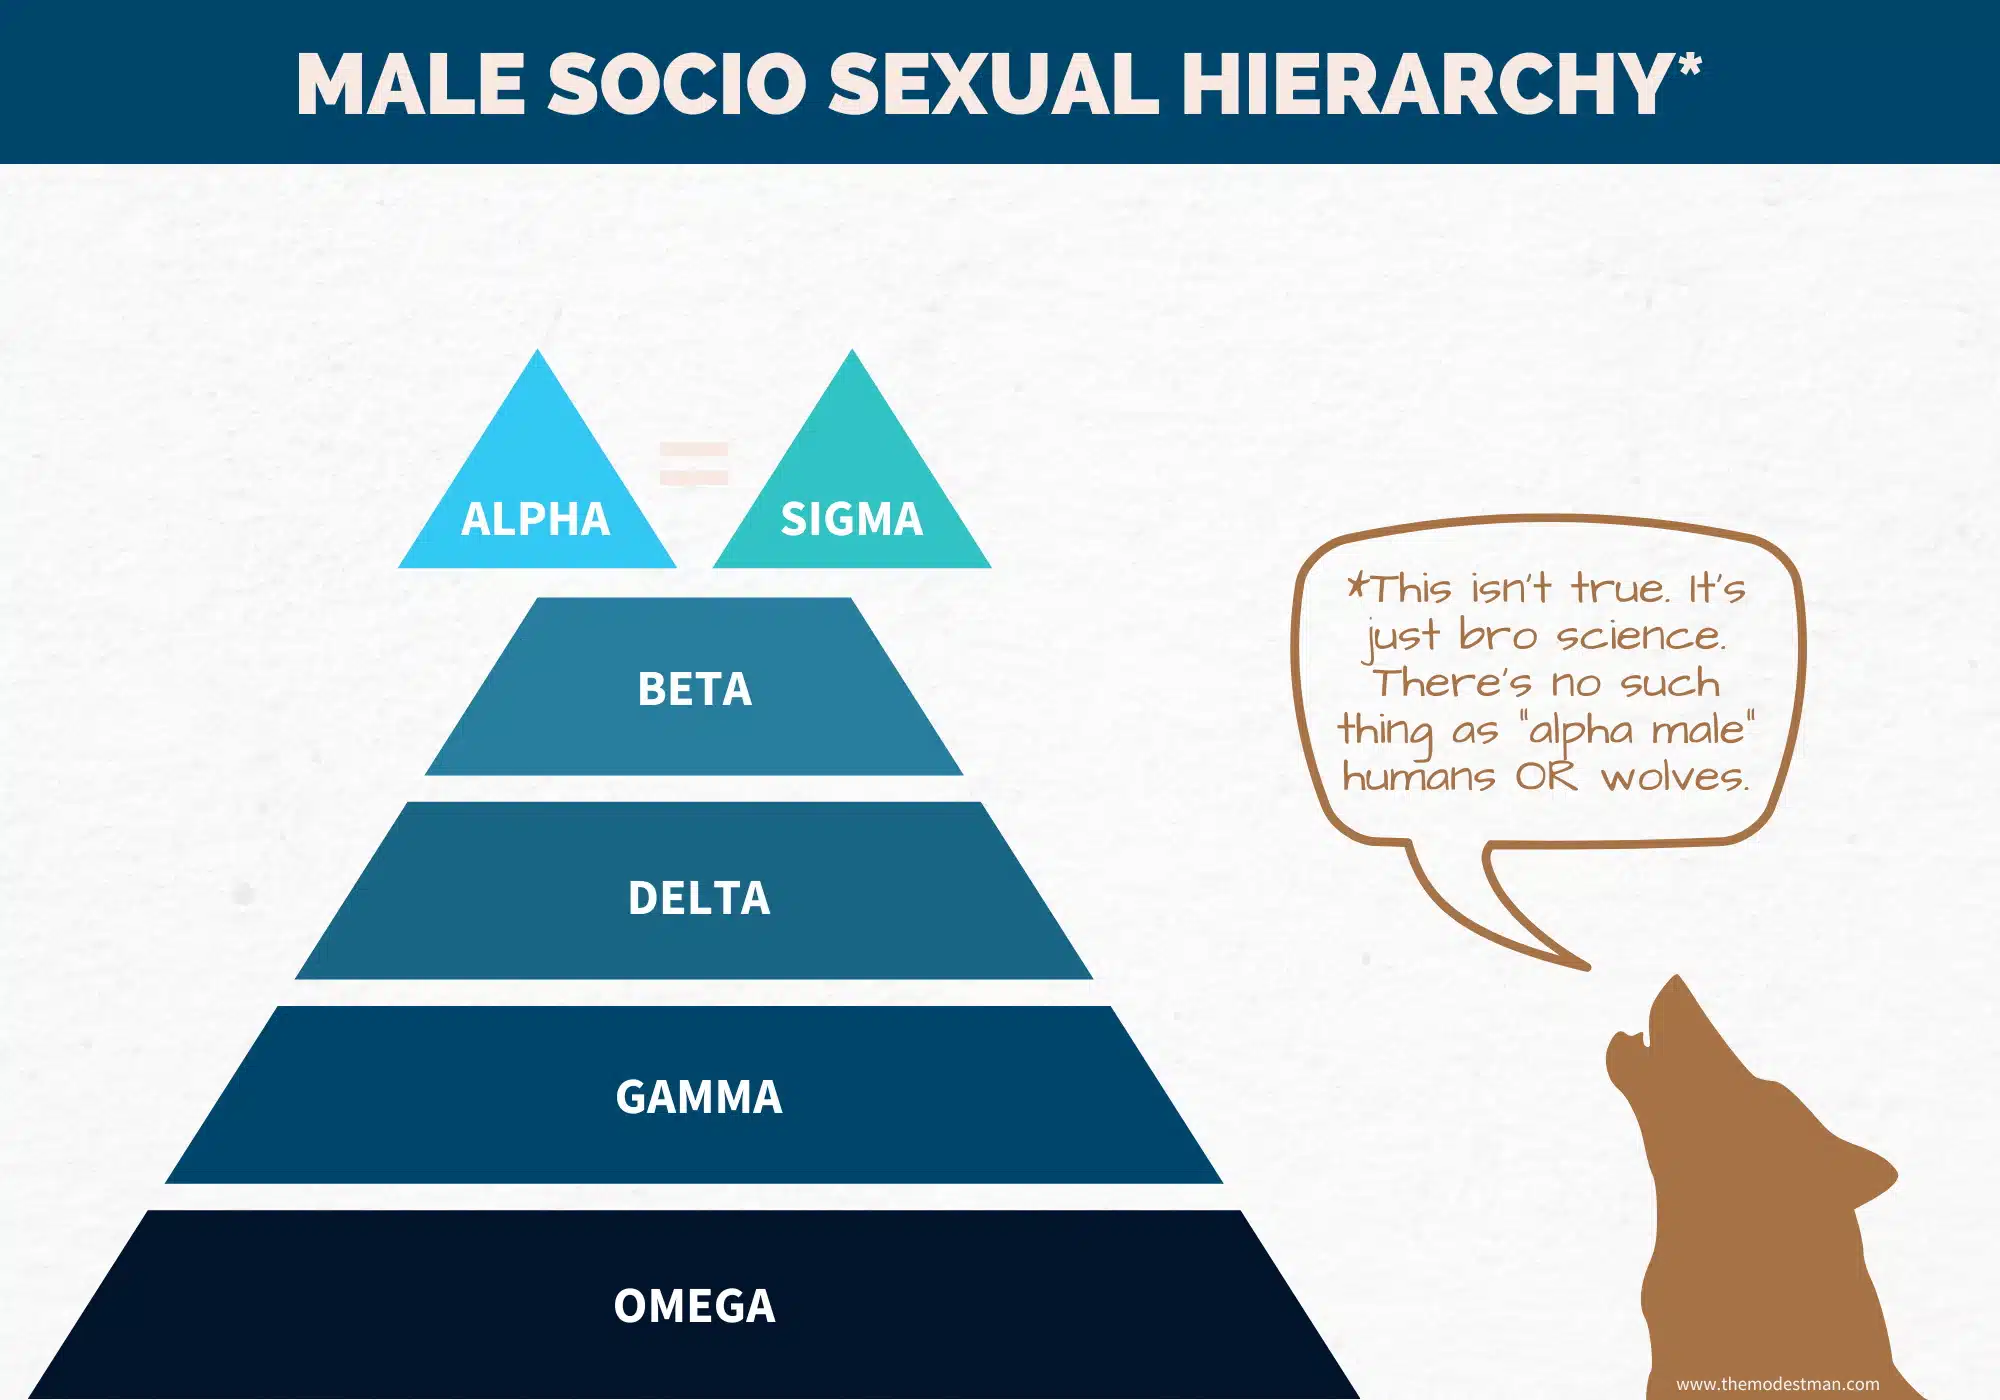 Male Socio Sexual Hierarchy